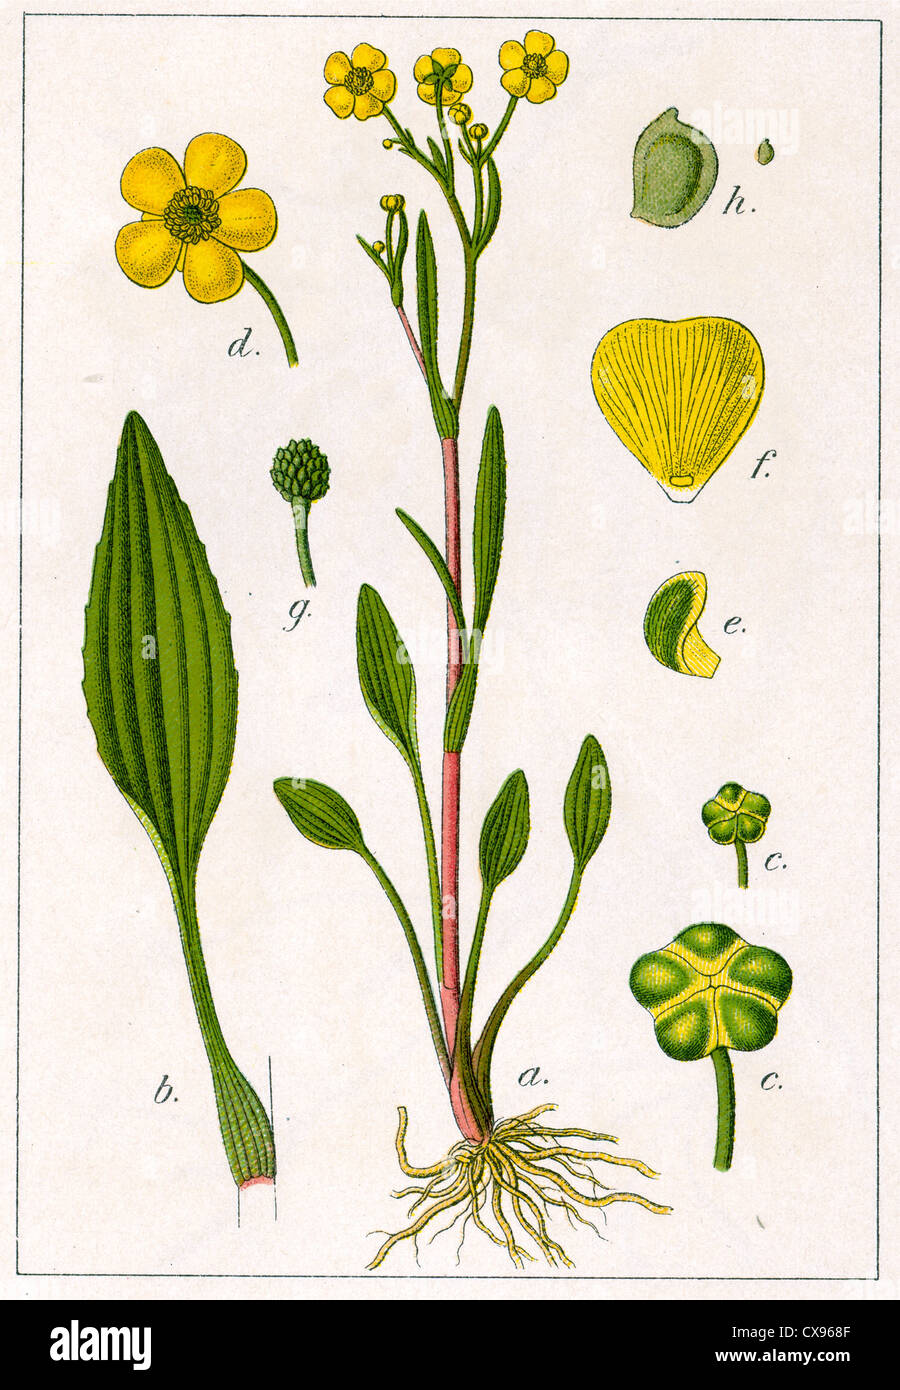 Ranunculus flammula Stock Photo